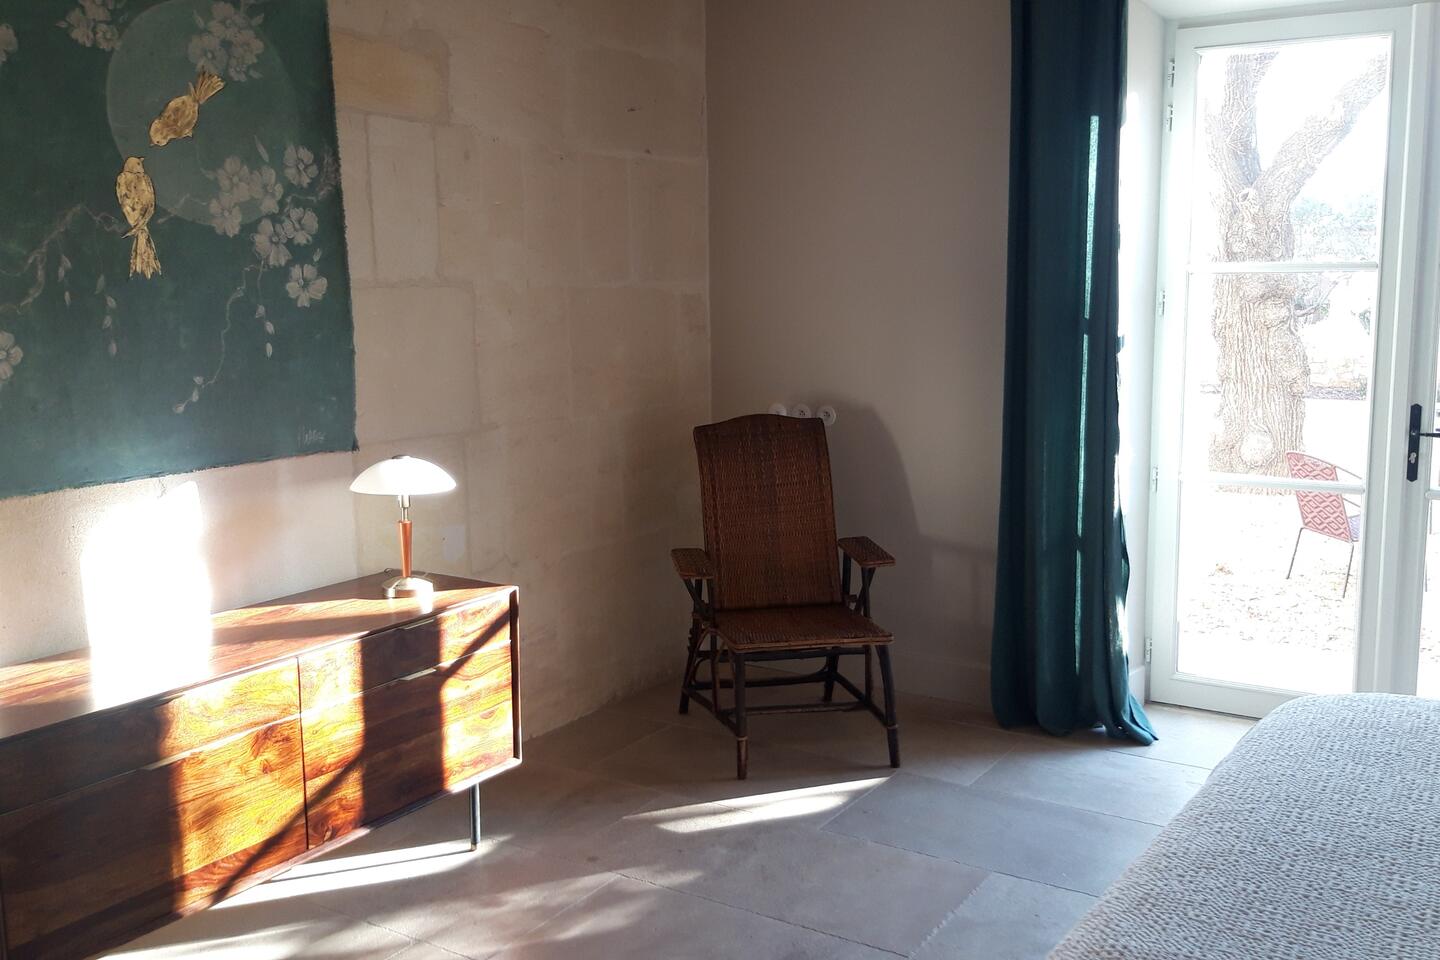 27 - Maison Mathilde: Villa: Interior